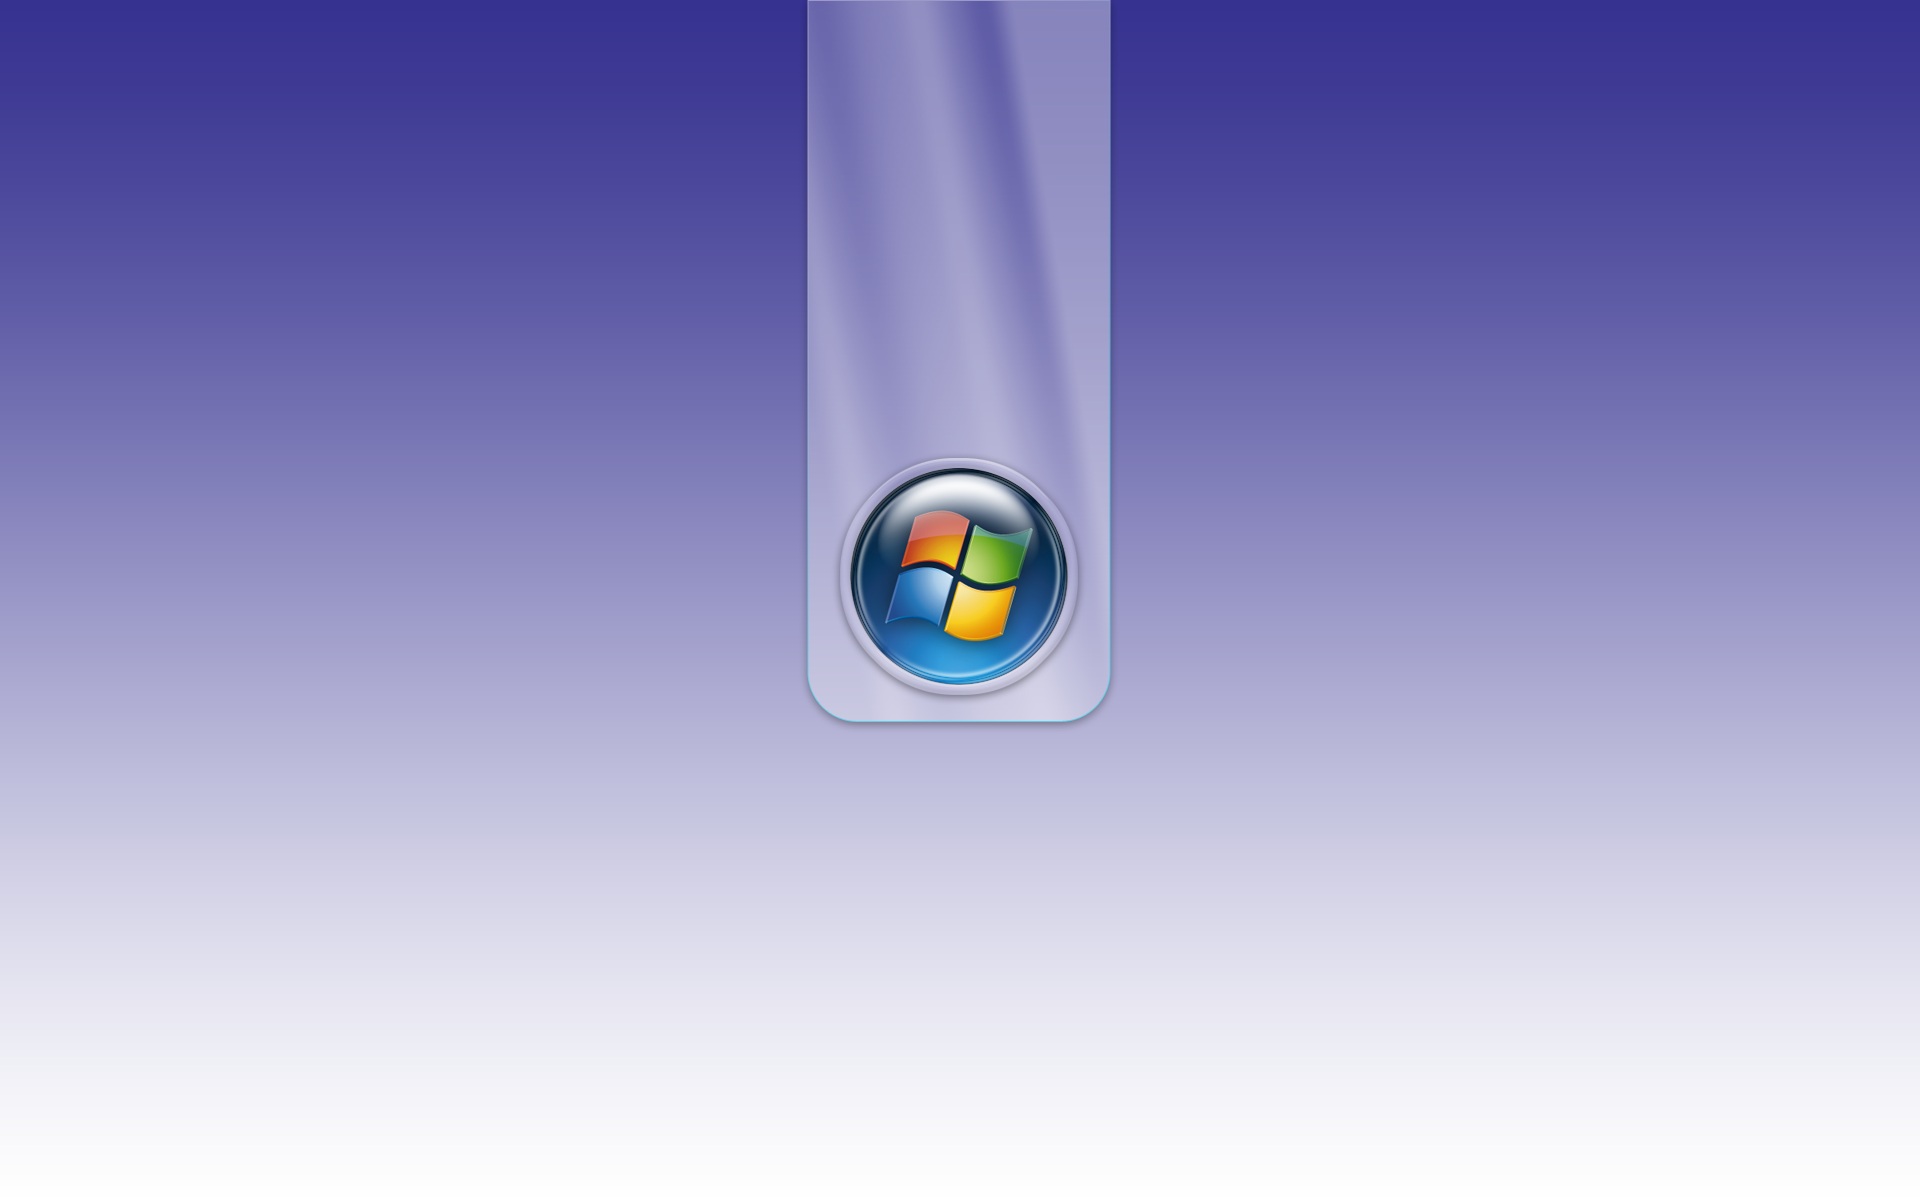 壁纸1920x1200超高分辨率Windows Vista简约壁纸壁纸 超高分辨率Windows Vista简约壁纸壁纸 超高分辨率Windows Vista简约壁纸图片 超高分辨率Windows Vista简约壁纸素材 创意壁纸 创意图库 创意图片素材桌面壁纸